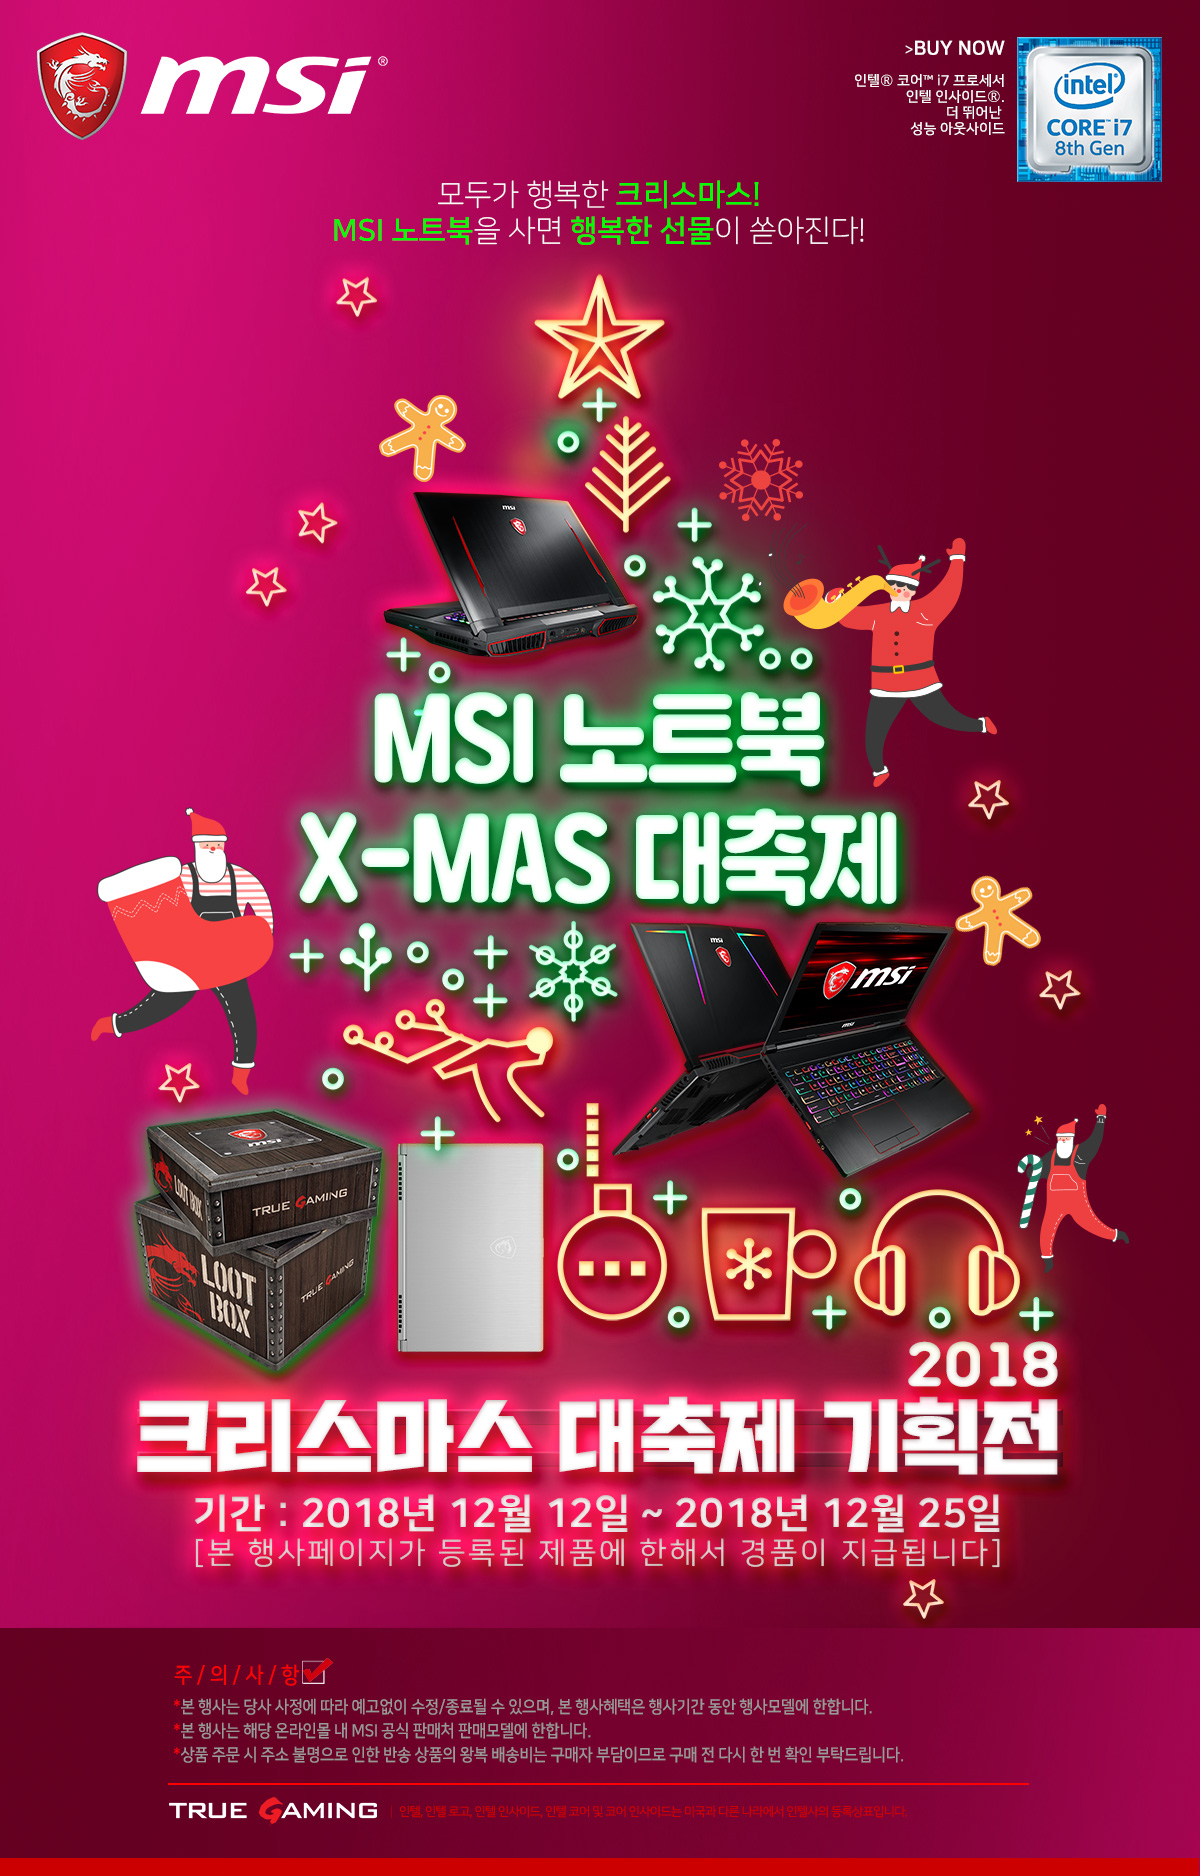 181212 MSI 크리스마스 기획전, 노트북을 사면 행복한 선물이 쏟아진다!.jpg